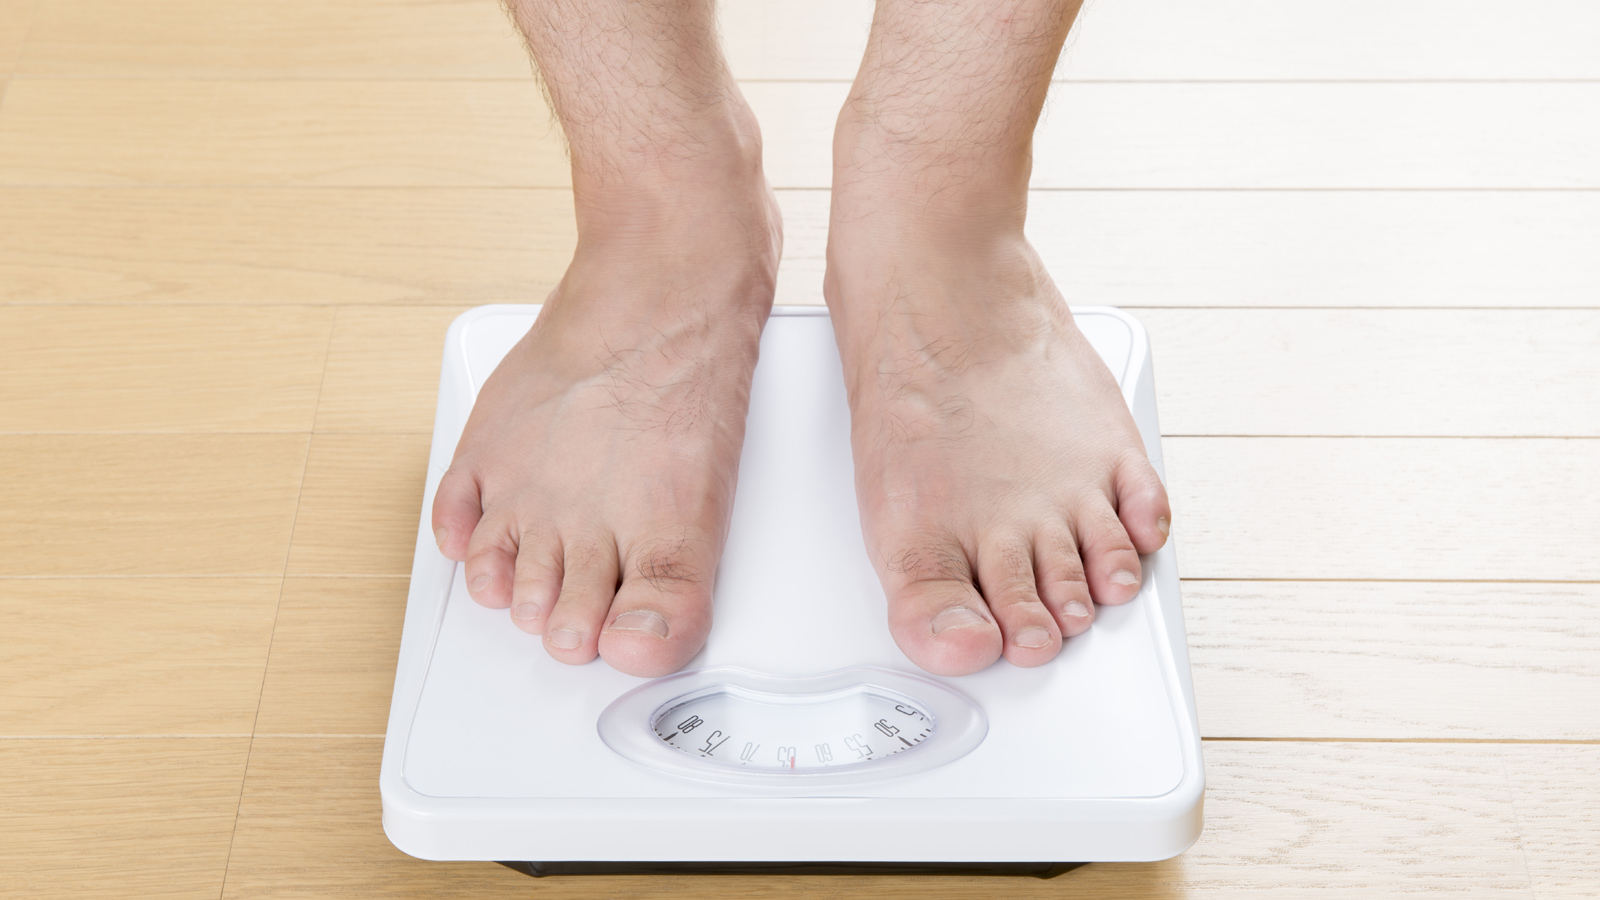 Điều gì xảy ra trong cơ thể khi bị sụt cân không rõ nguyên nhân?
